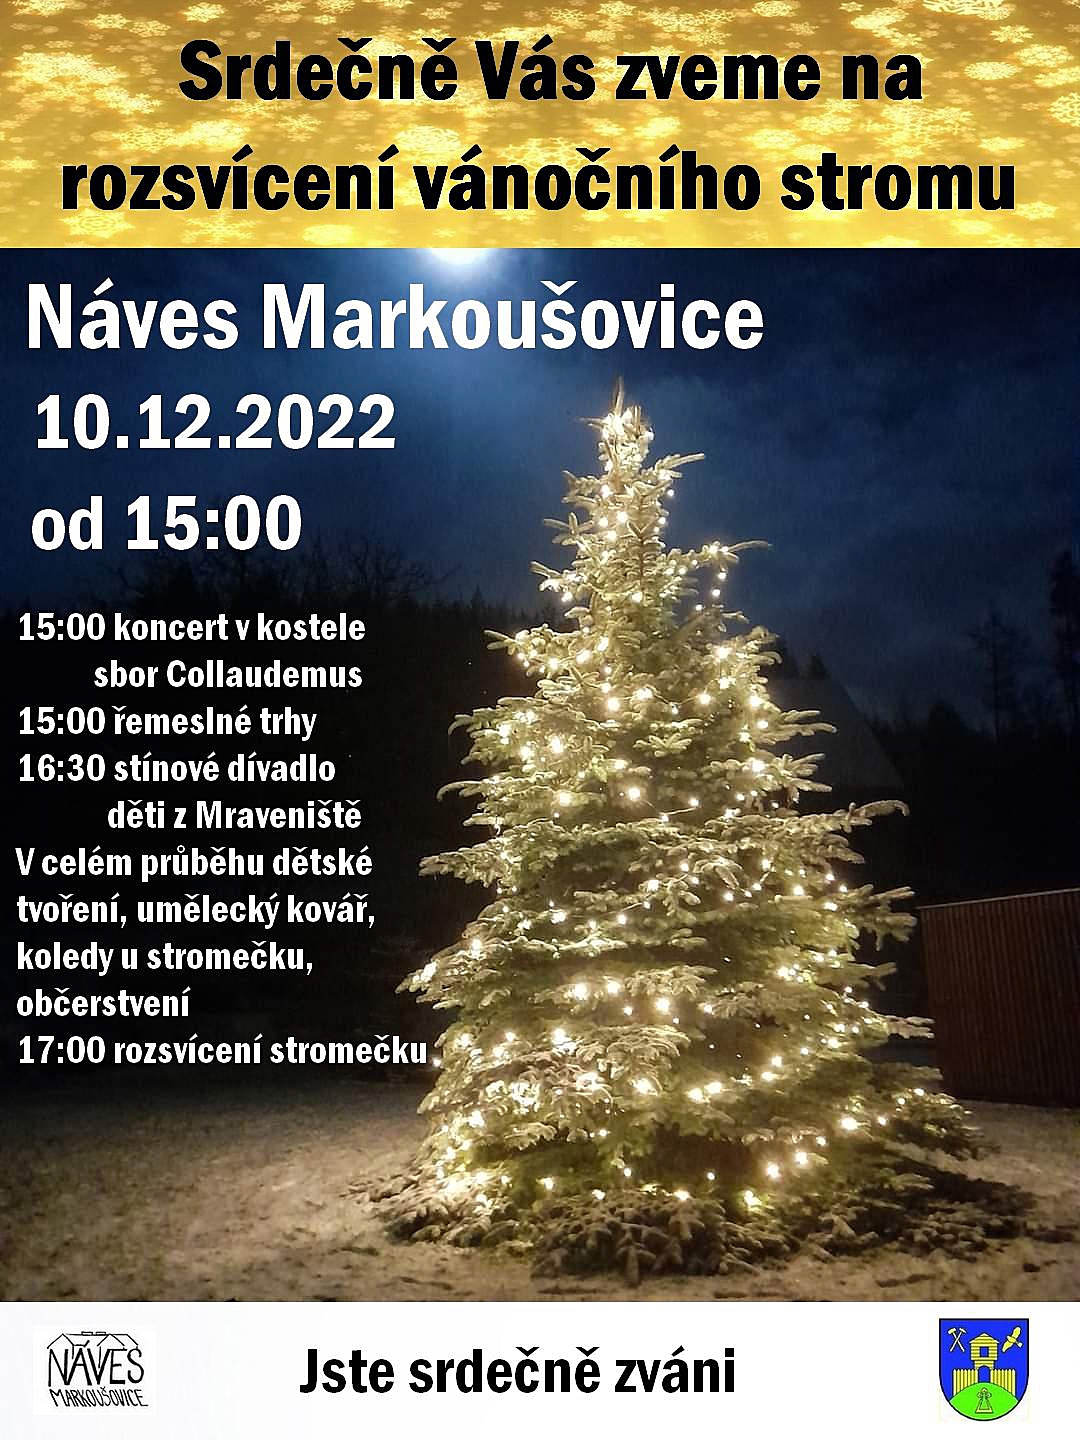 Rozsvícení vánočního stromu v Markoušovicích